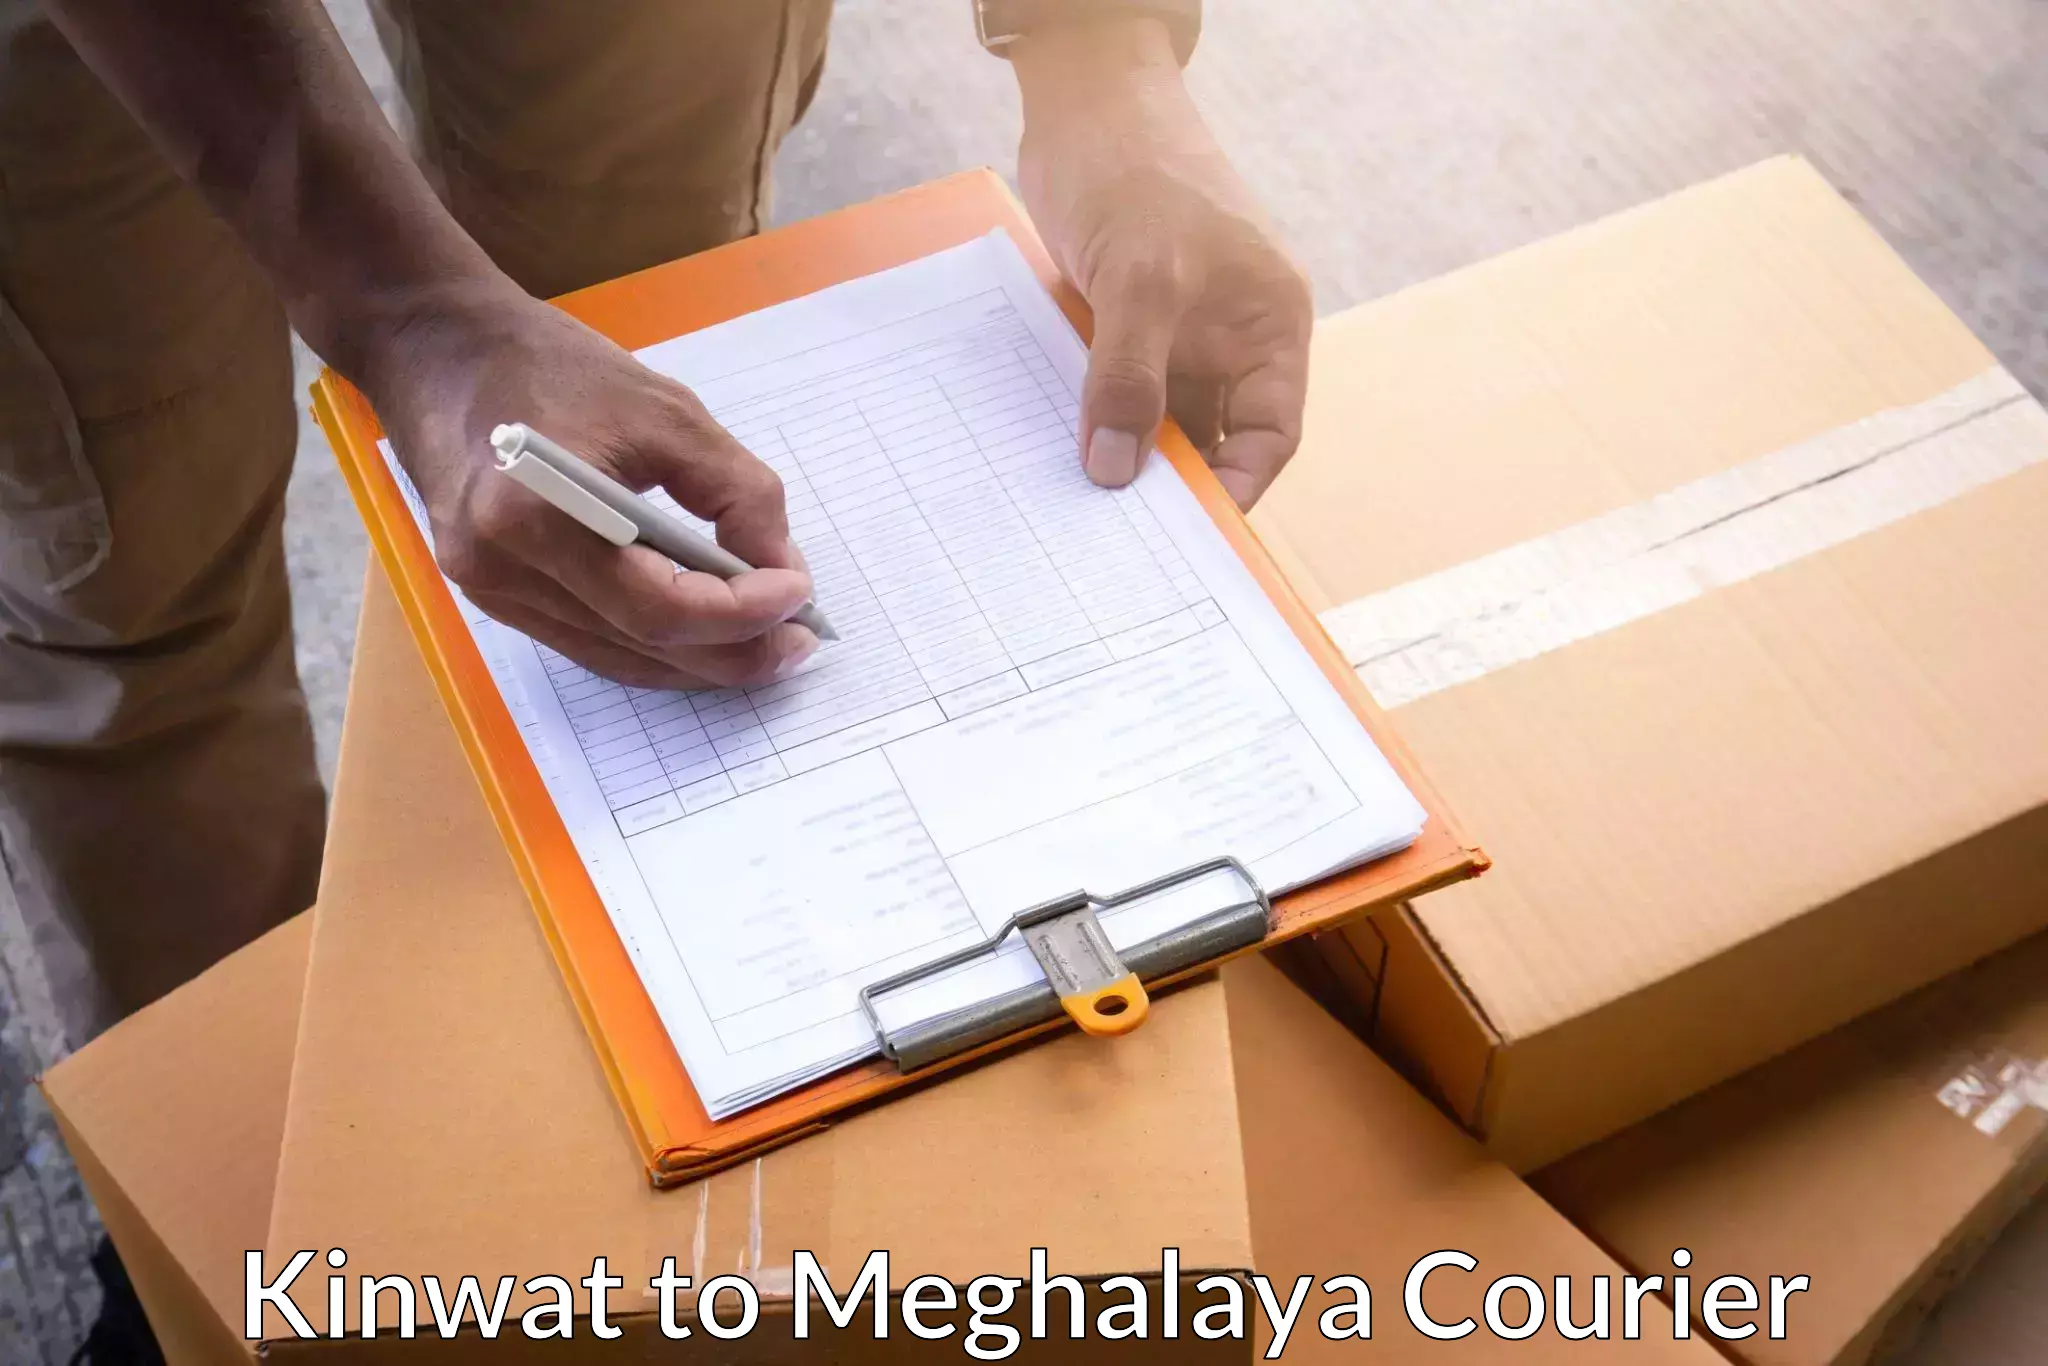 Smart shipping technology Kinwat to Meghalaya